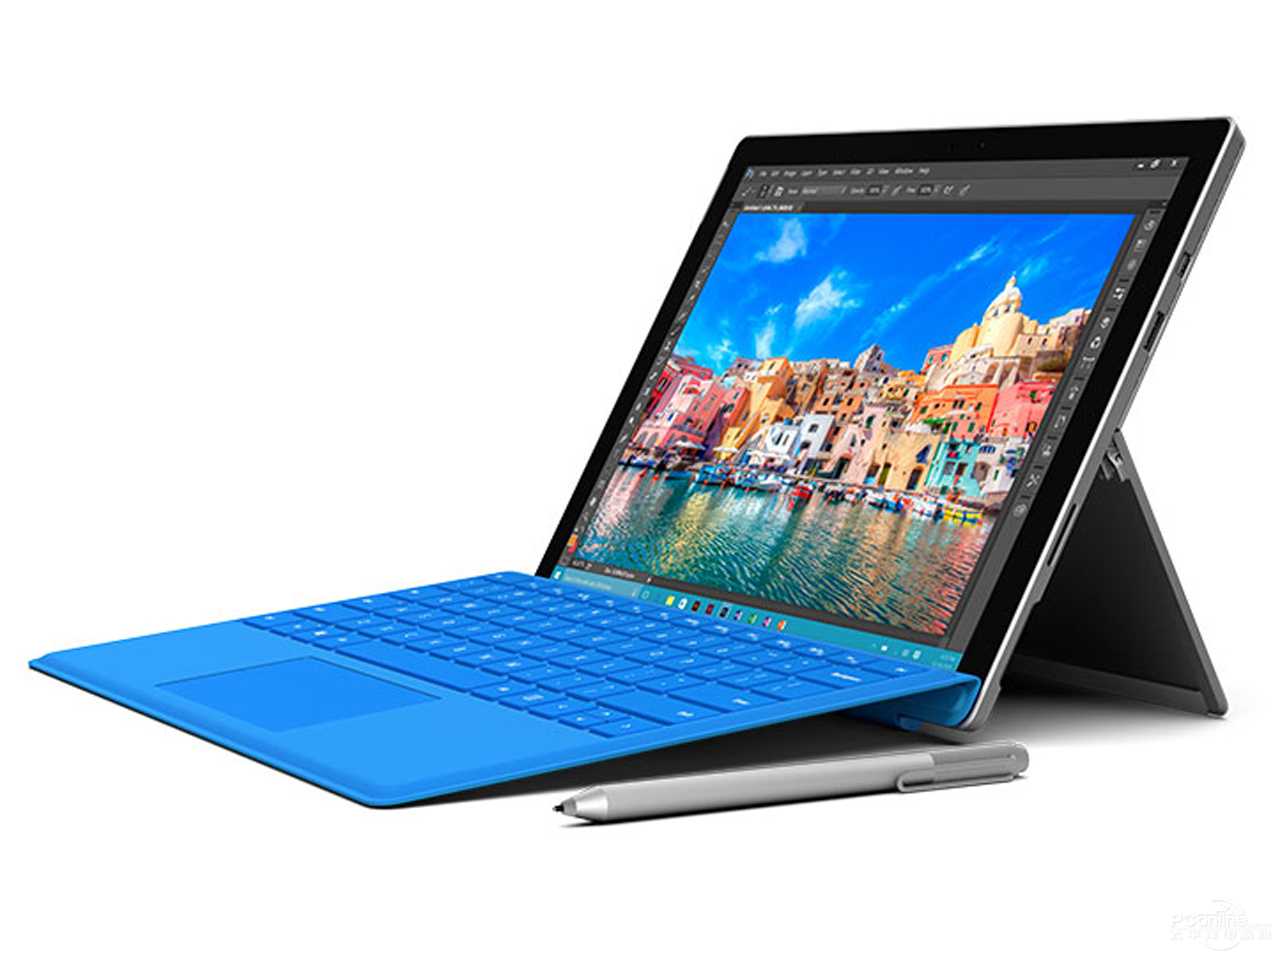 微软Surface Pro 4(i7/16GB/512GB)